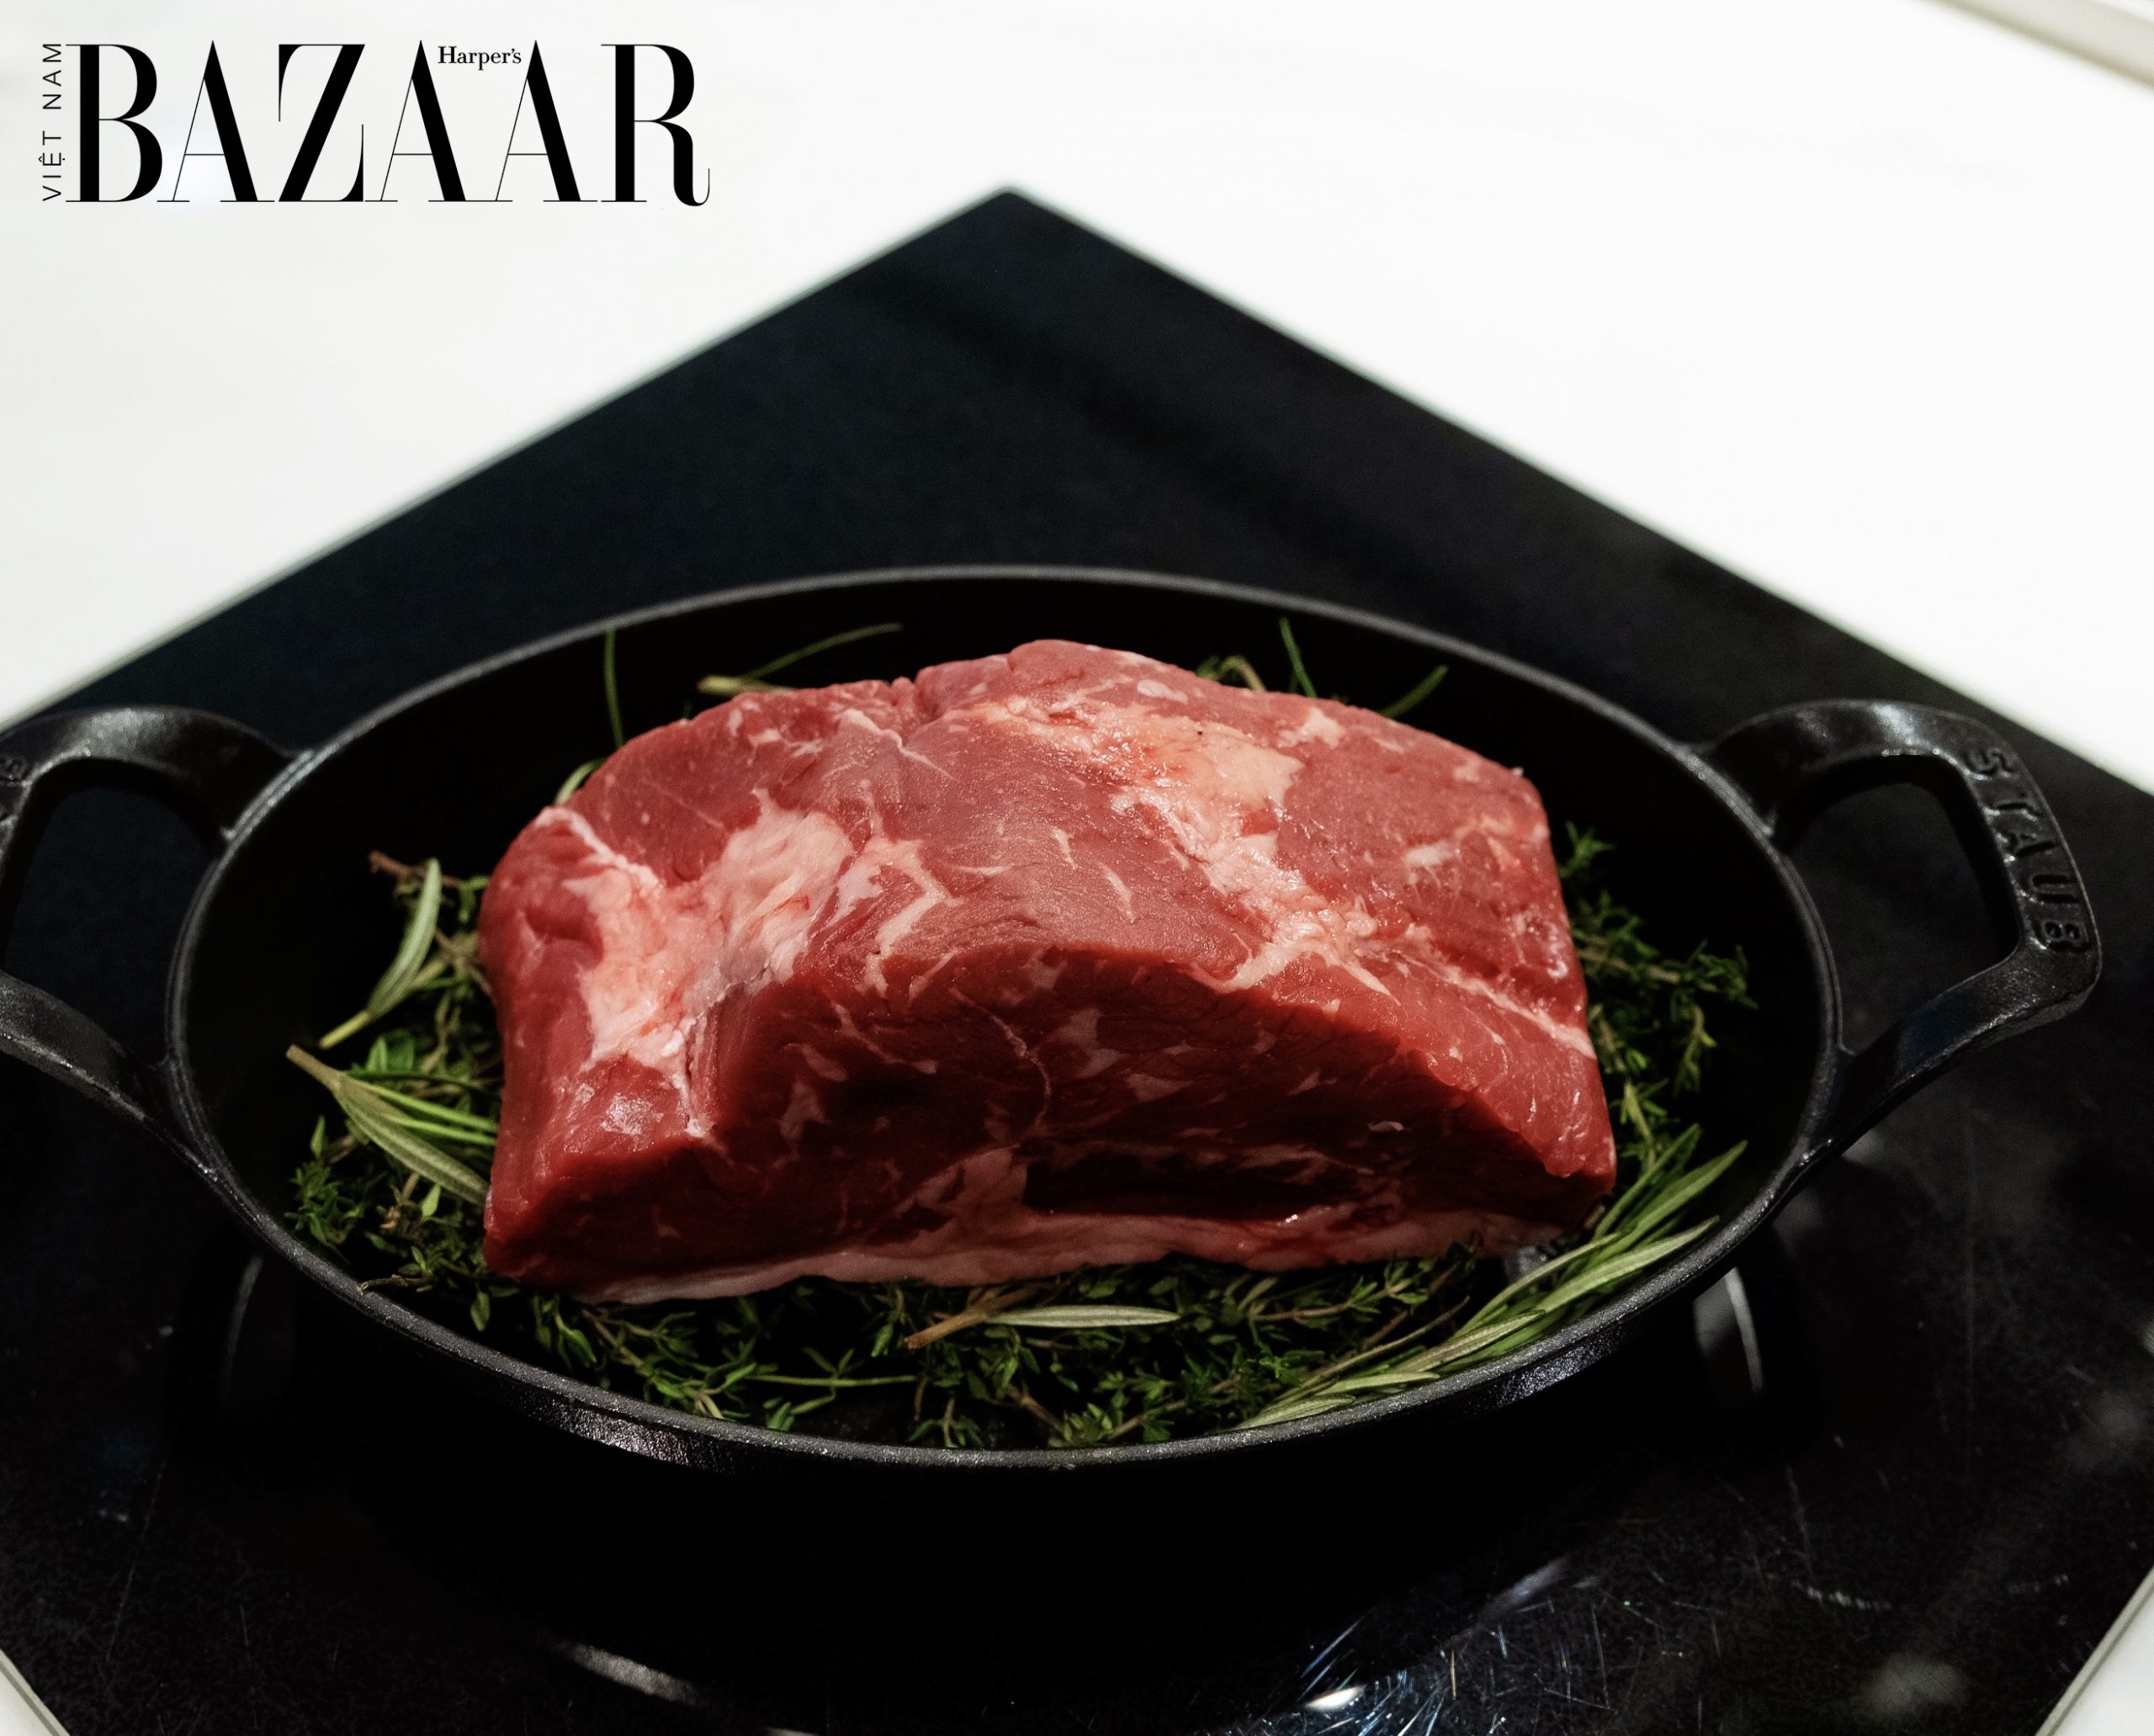 Harper's Bazaar_MLA hợp tác với Park Hyatt Sài Gòn để giới thiệu món bò Úc_4